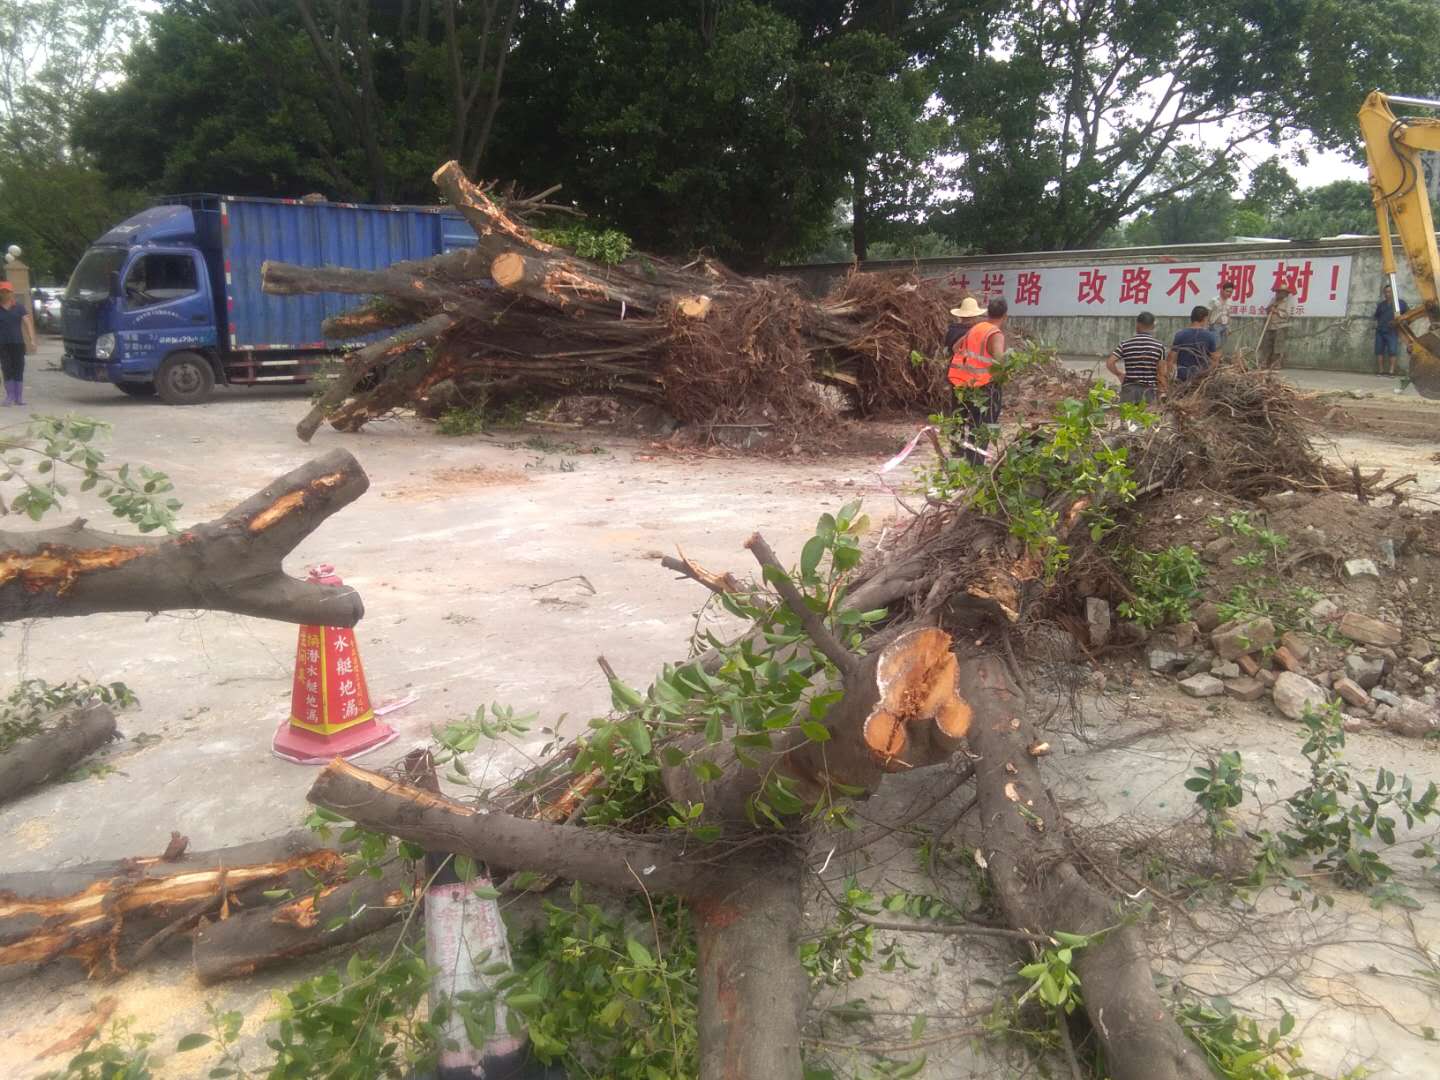 广州天河树木移植 专业街道绿化移栽工程 园林树木移栽工程公司电话图片